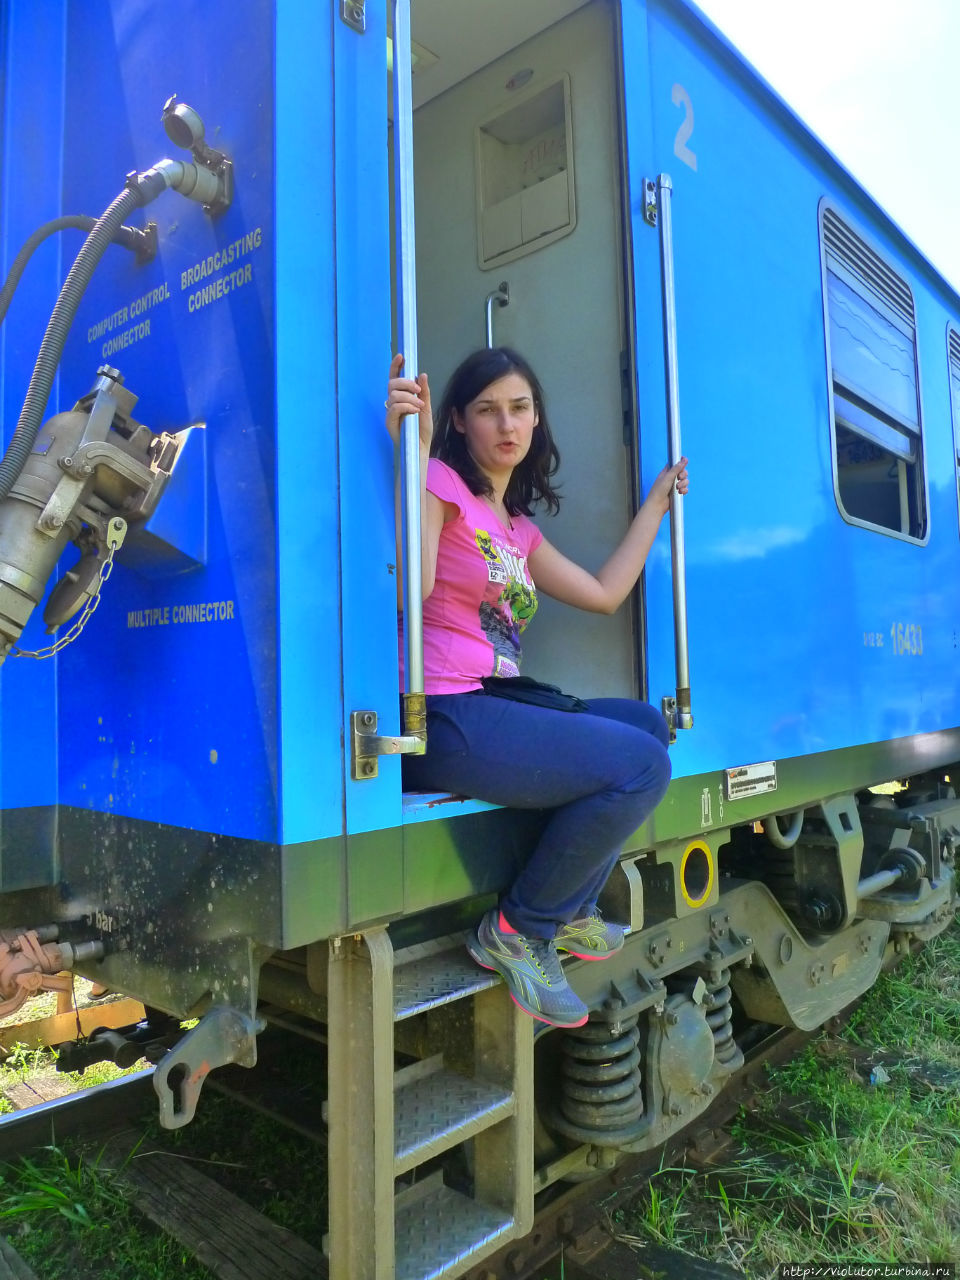 На поезде в Эллу Элла, Шри-Ланка